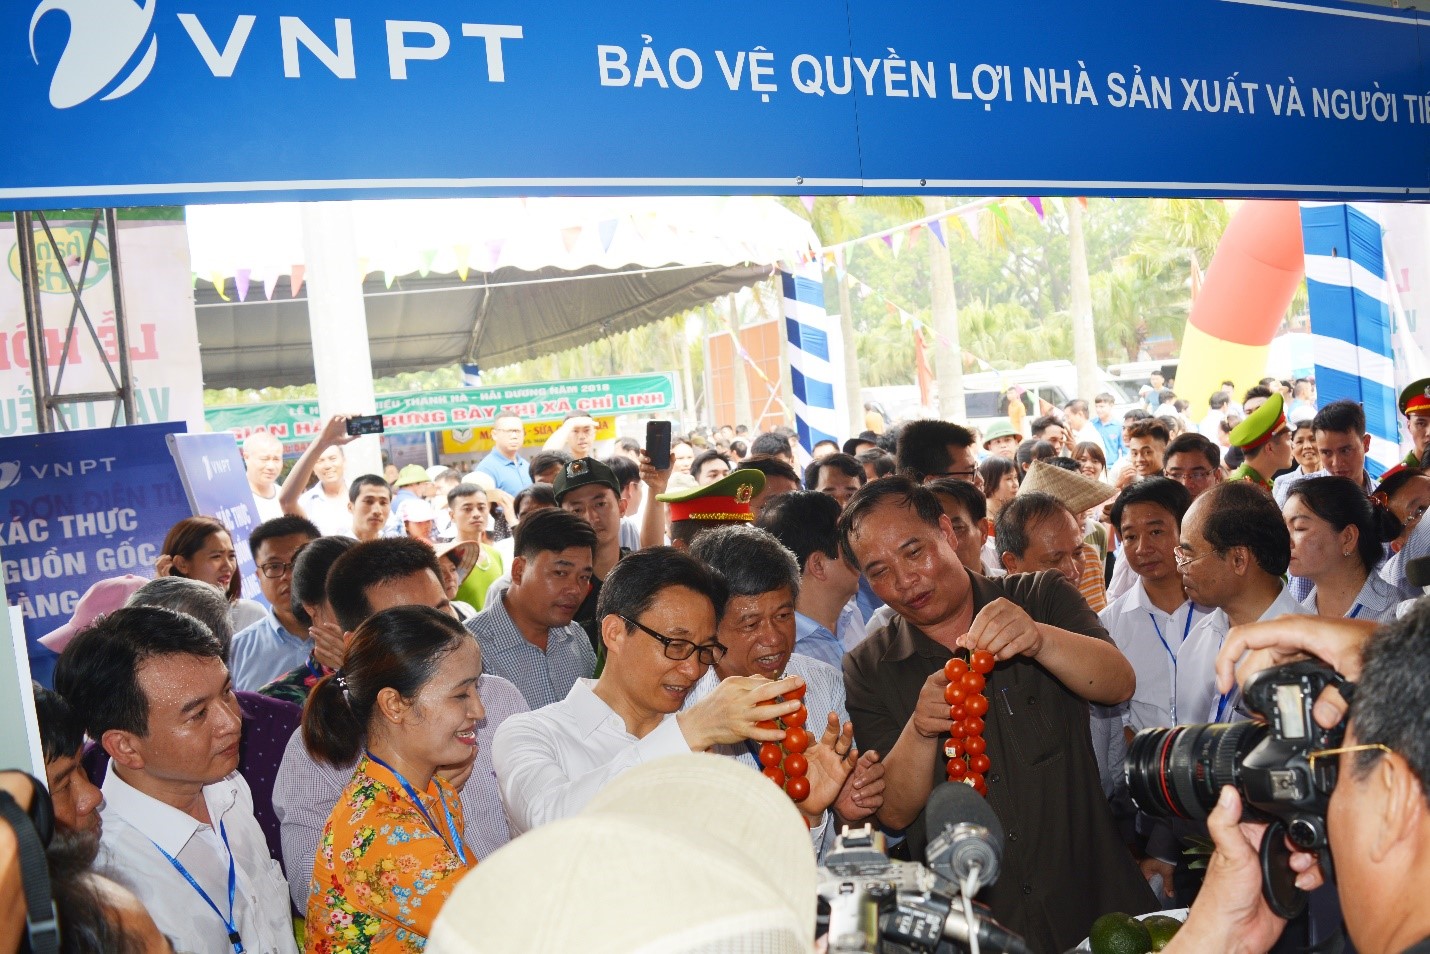 Phó Thủ tướng Vũ Đức Đam sử dụng thử dịch vụ VNPT Check tại Lễ hội Vải thiều Thanh Hà – Hải Dương, tháng 6/2018